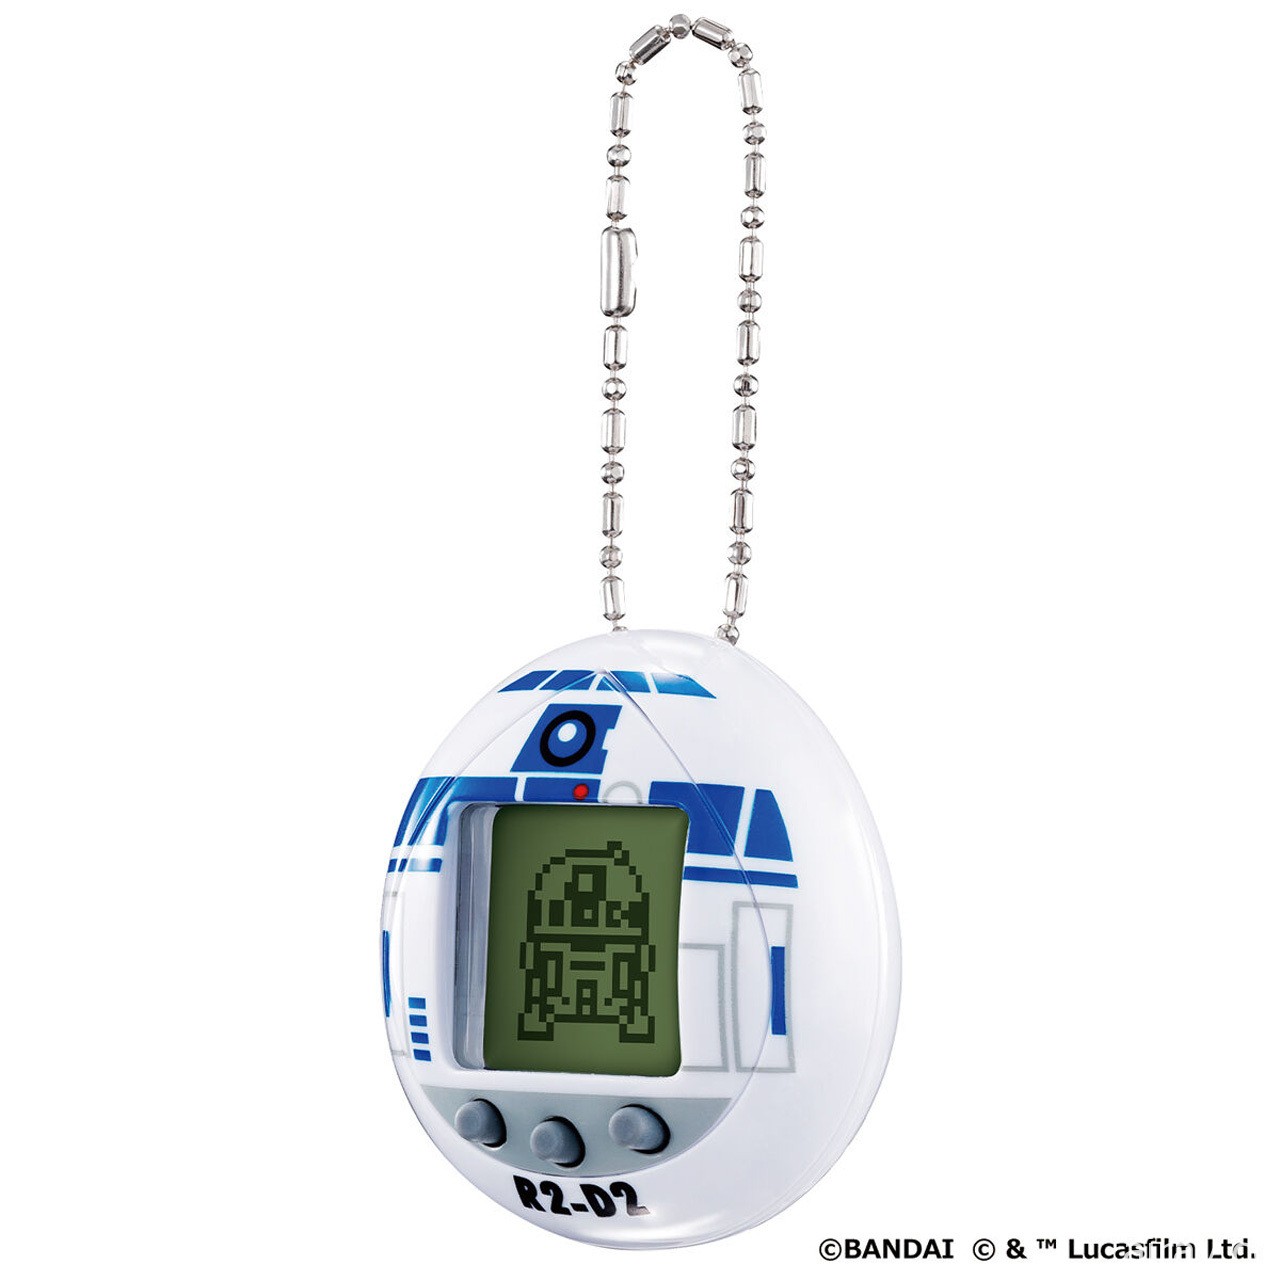 《星際大戰》招牌吉祥物「R2-D2」化身電子雞登場 收錄 19 種型態與眾多小遊戲